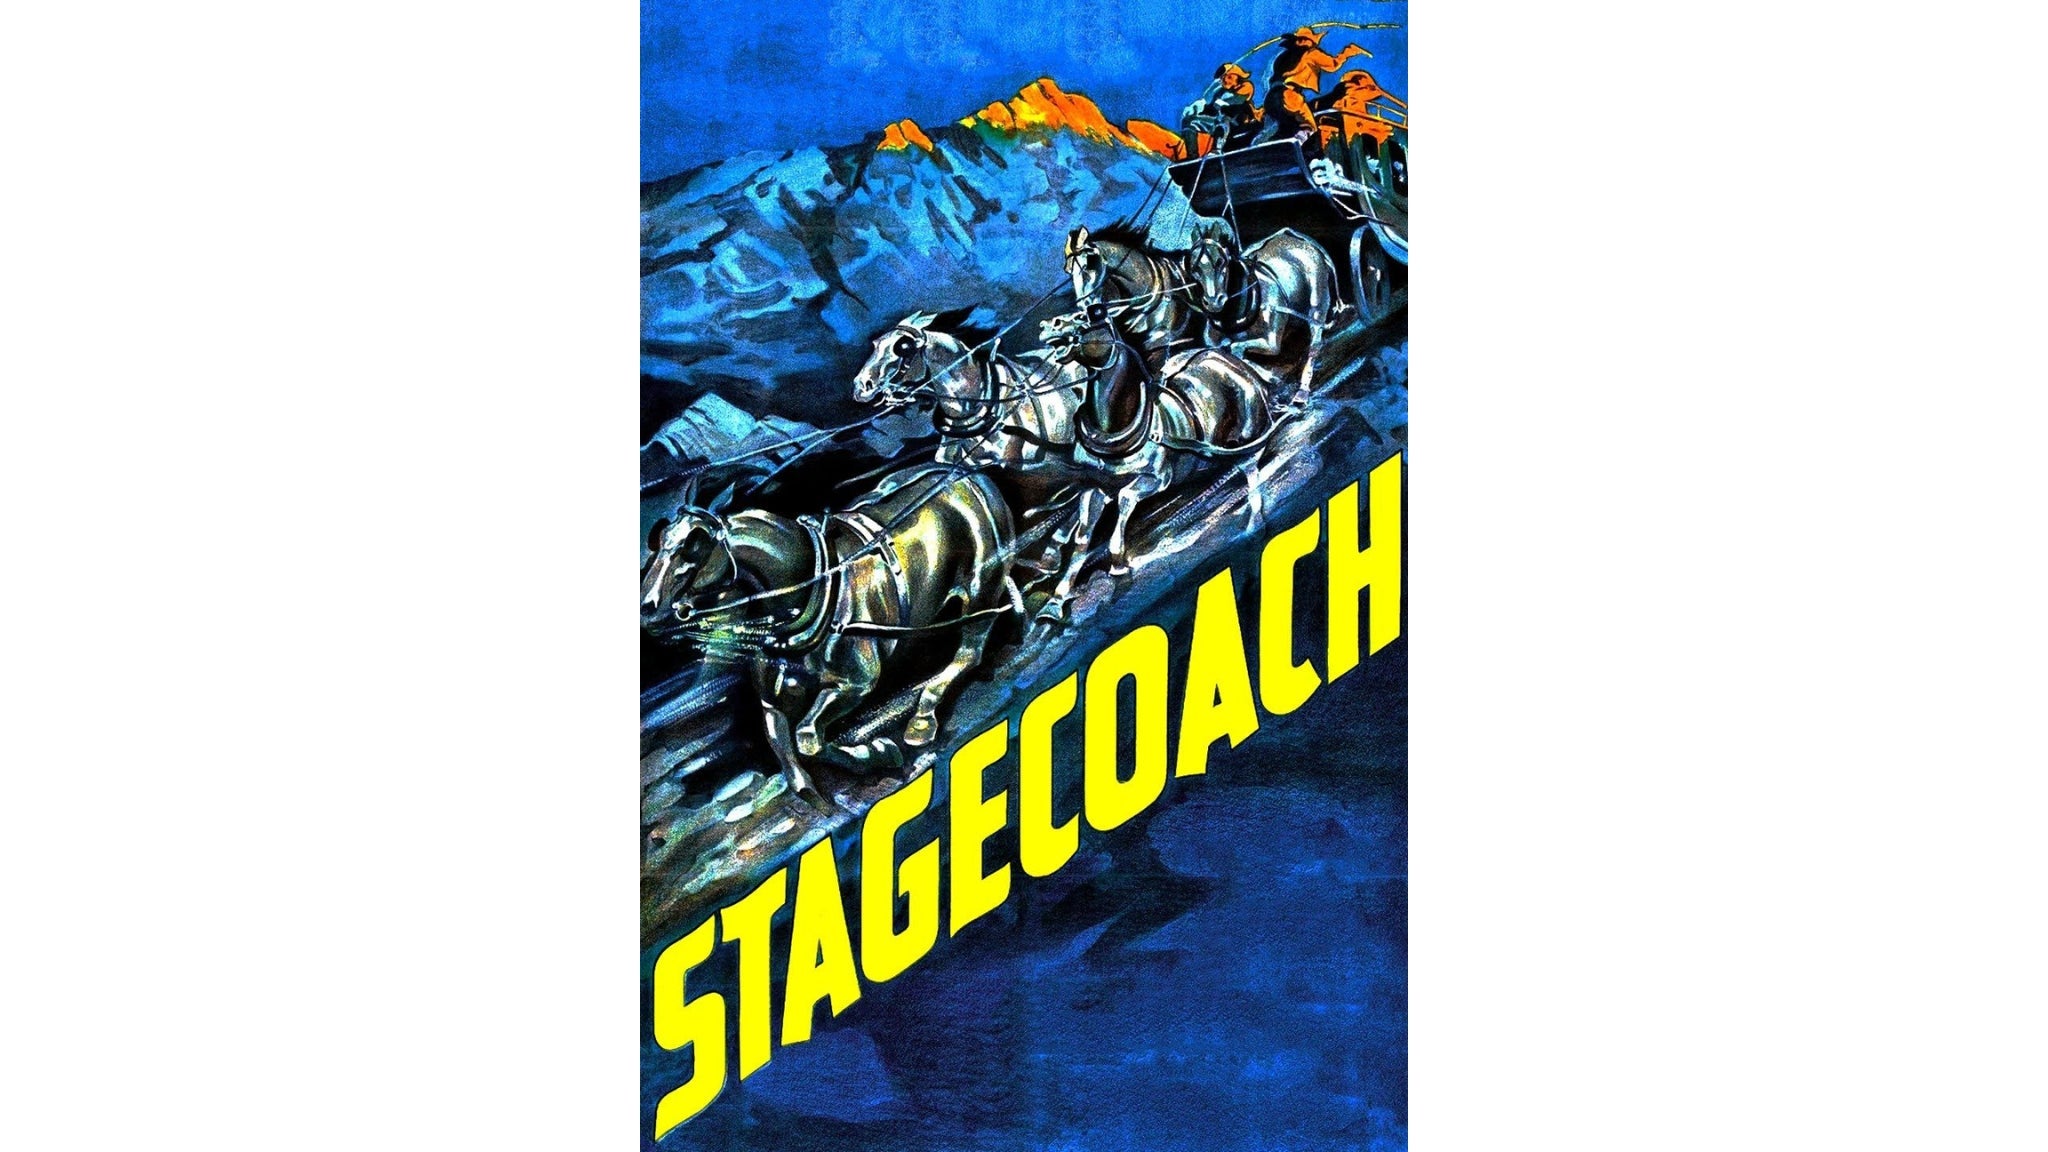 Movie: Stagecoach (1939) w/ John DiLeo